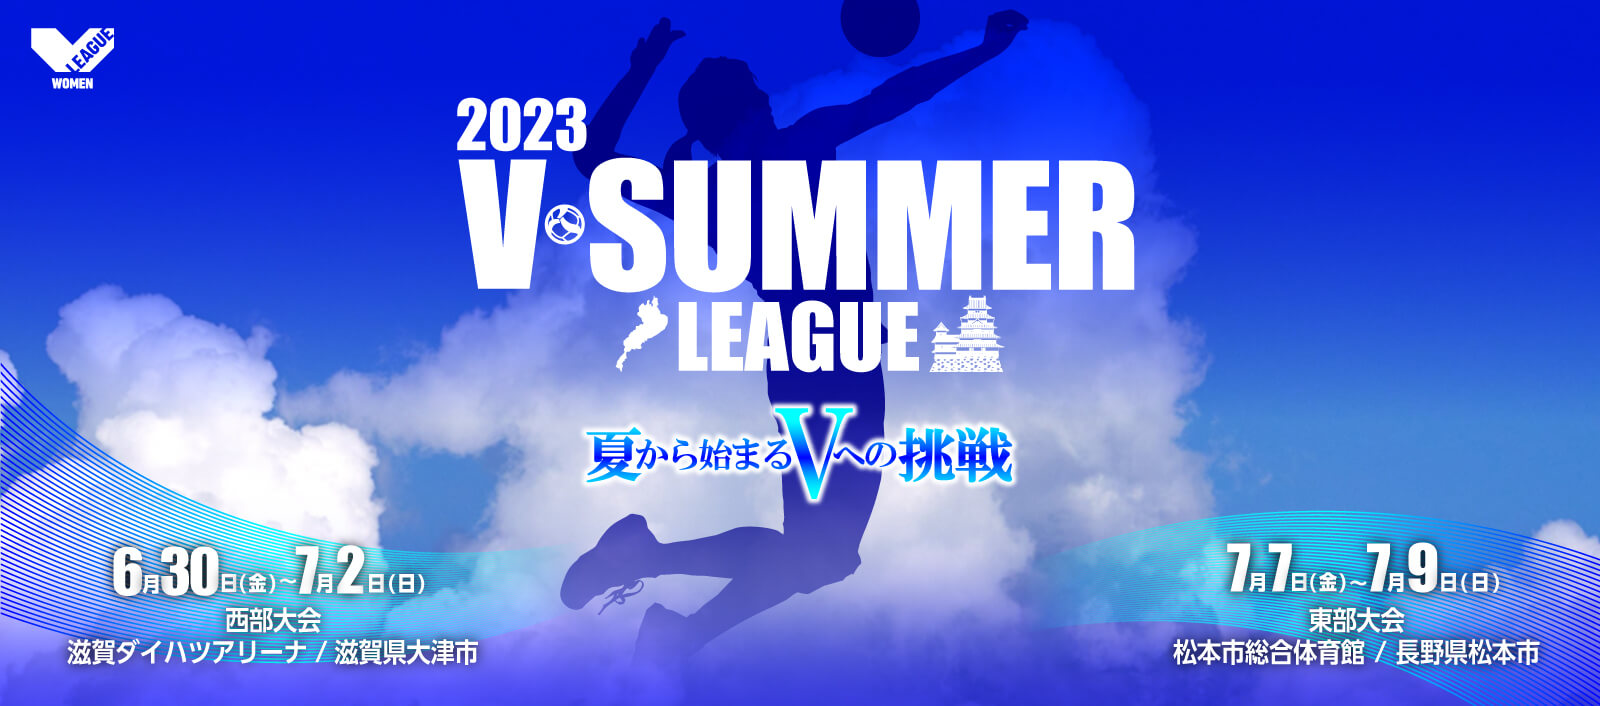 東部大会 2023 SUMMER LEAGUE バレーボール Vリーグ オフィシャルサイト NEWS バレーボール Vリーグ